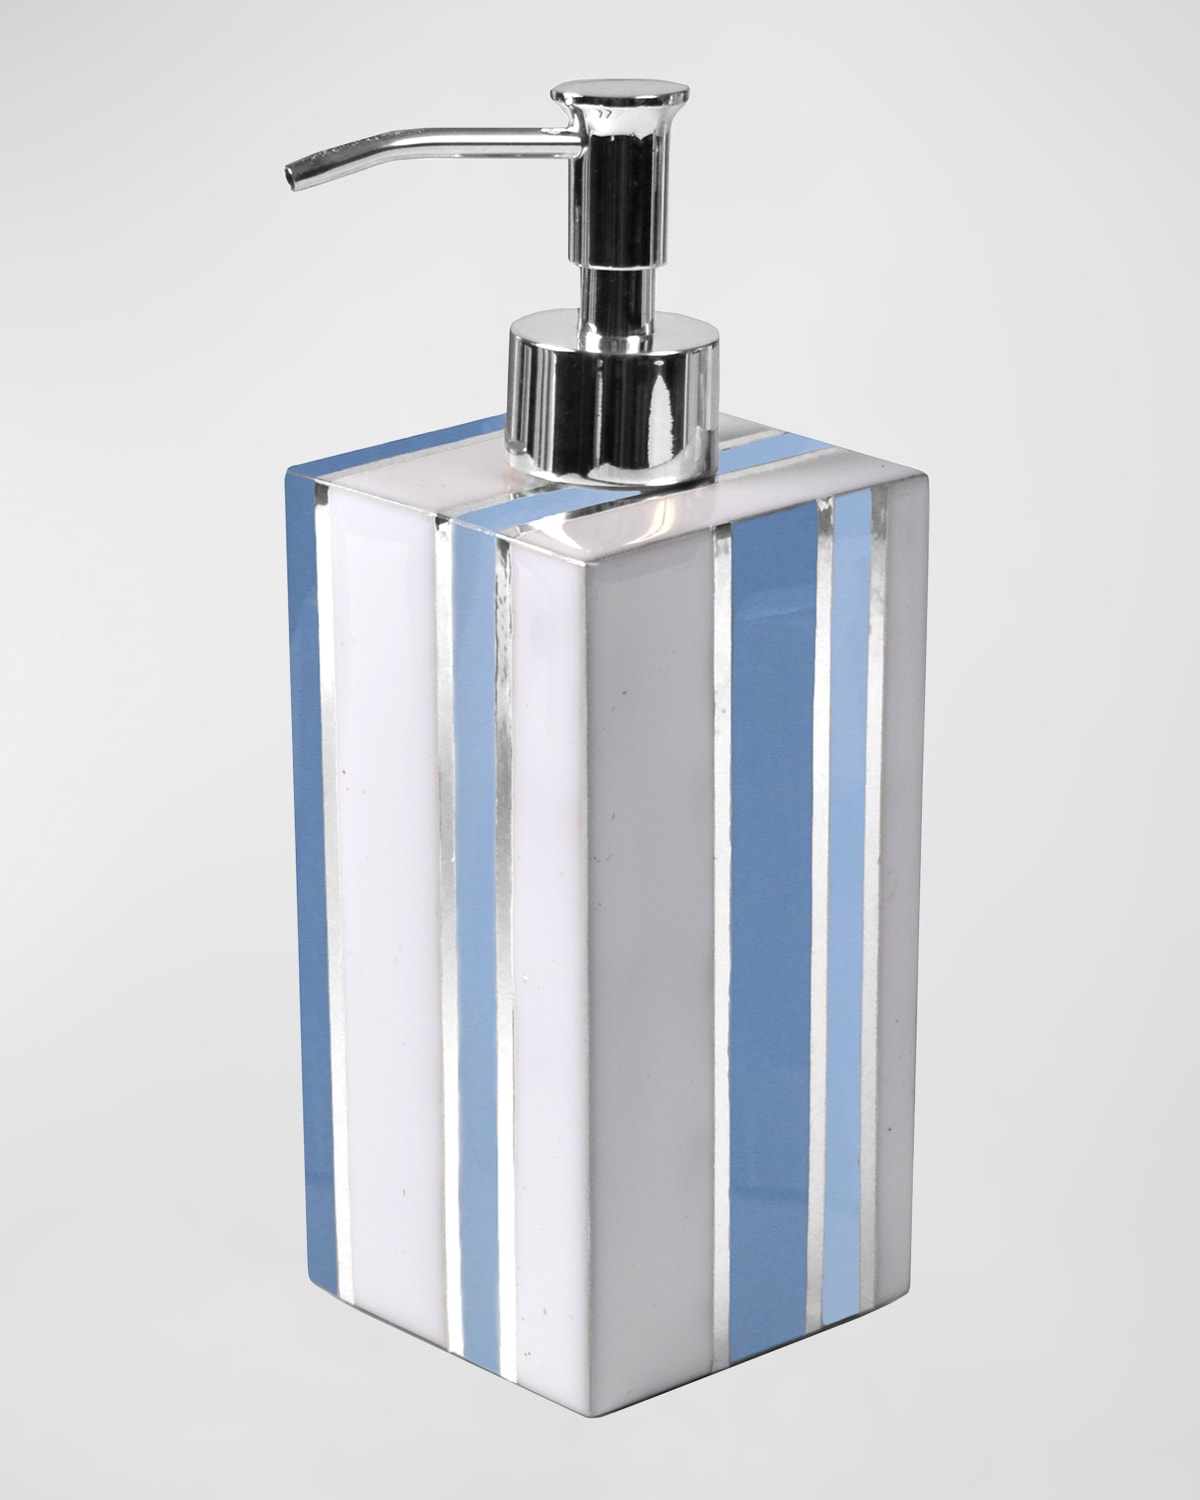 Catalina Box Pump Soap Dispenser